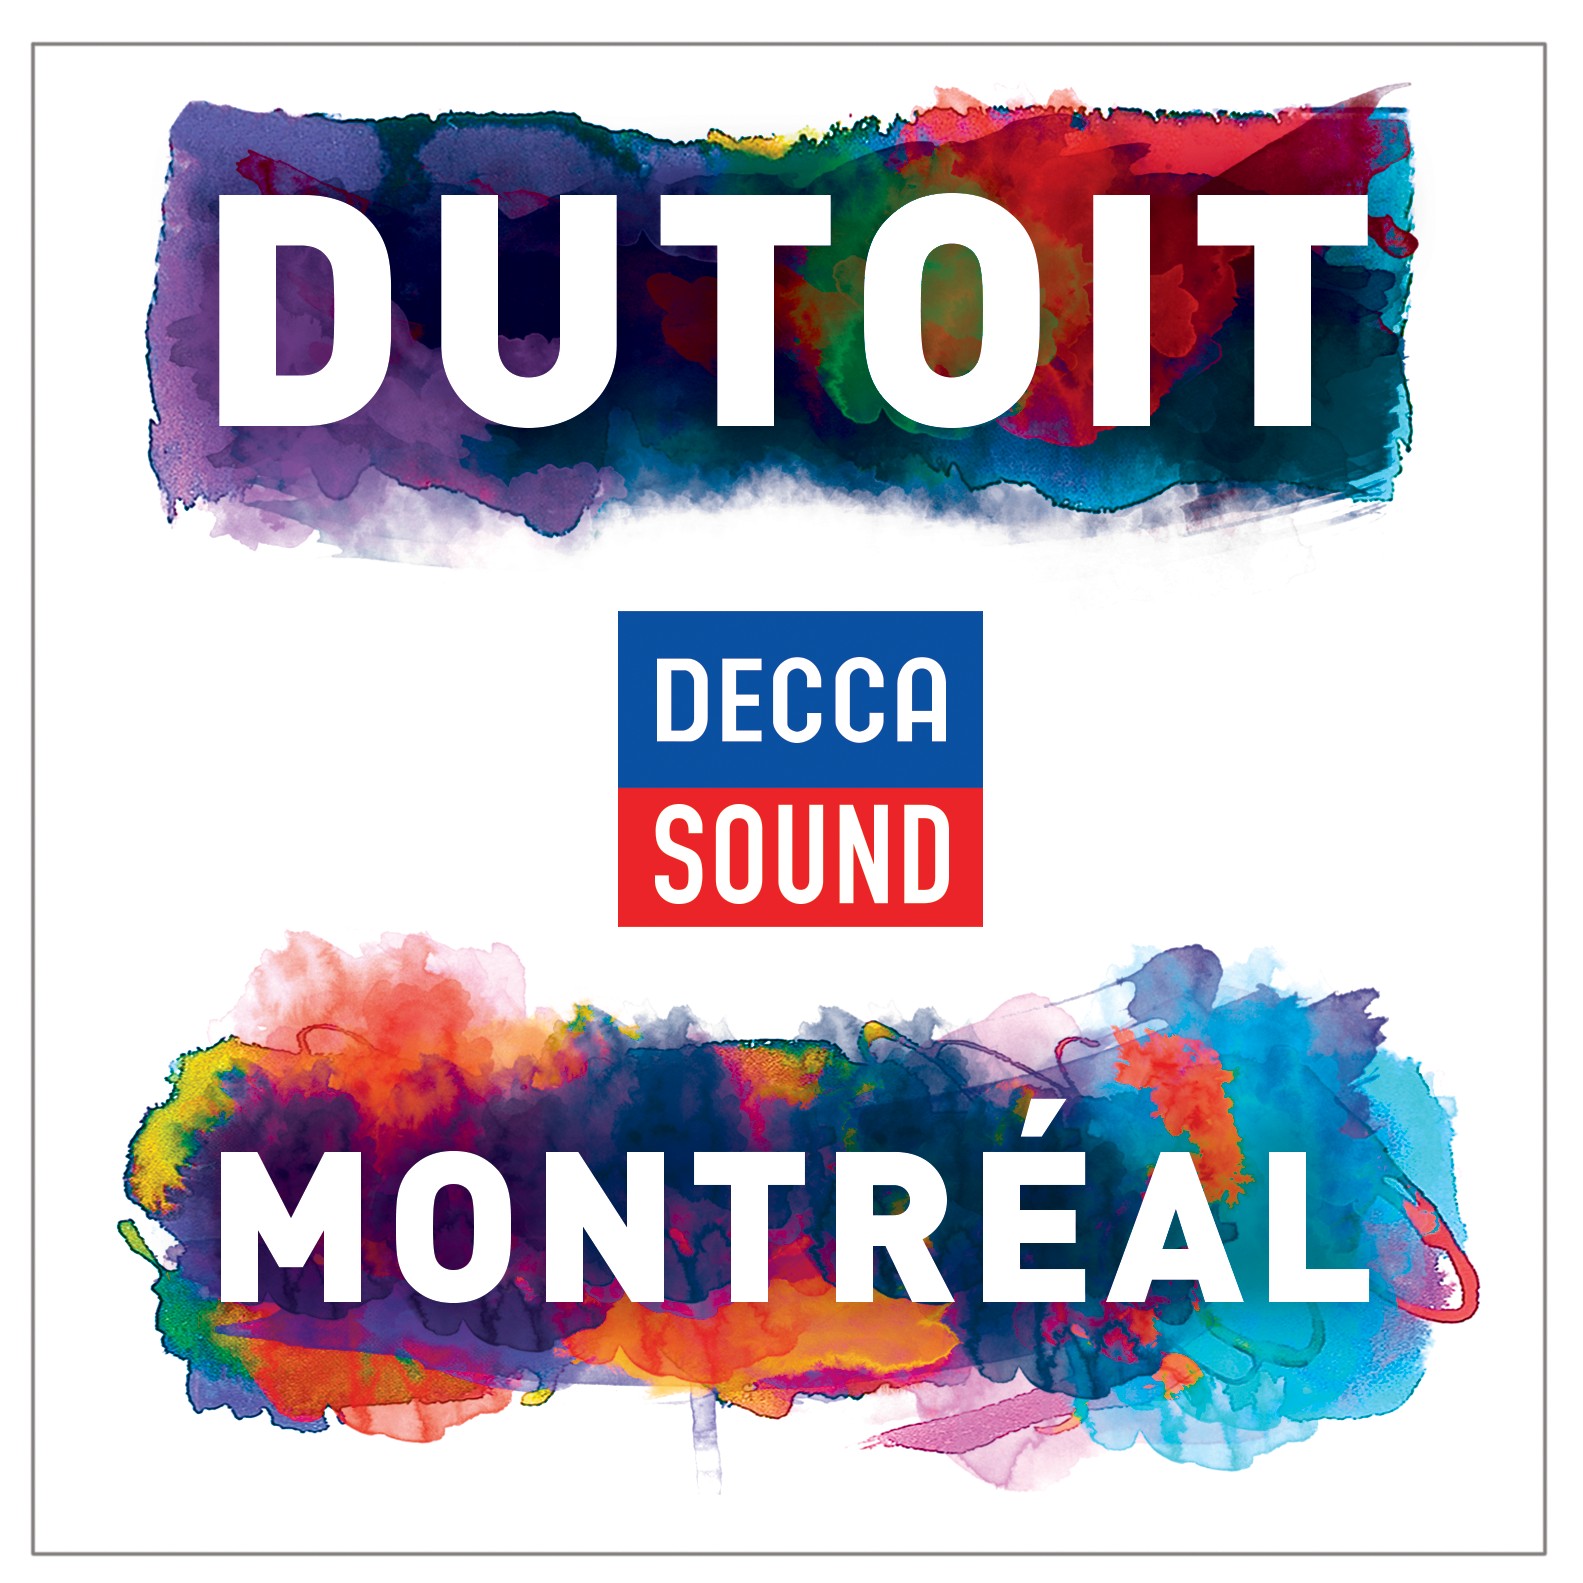 Esce oggi 'Dutoit – Montrèal' : il suono allo stato dell'arte.